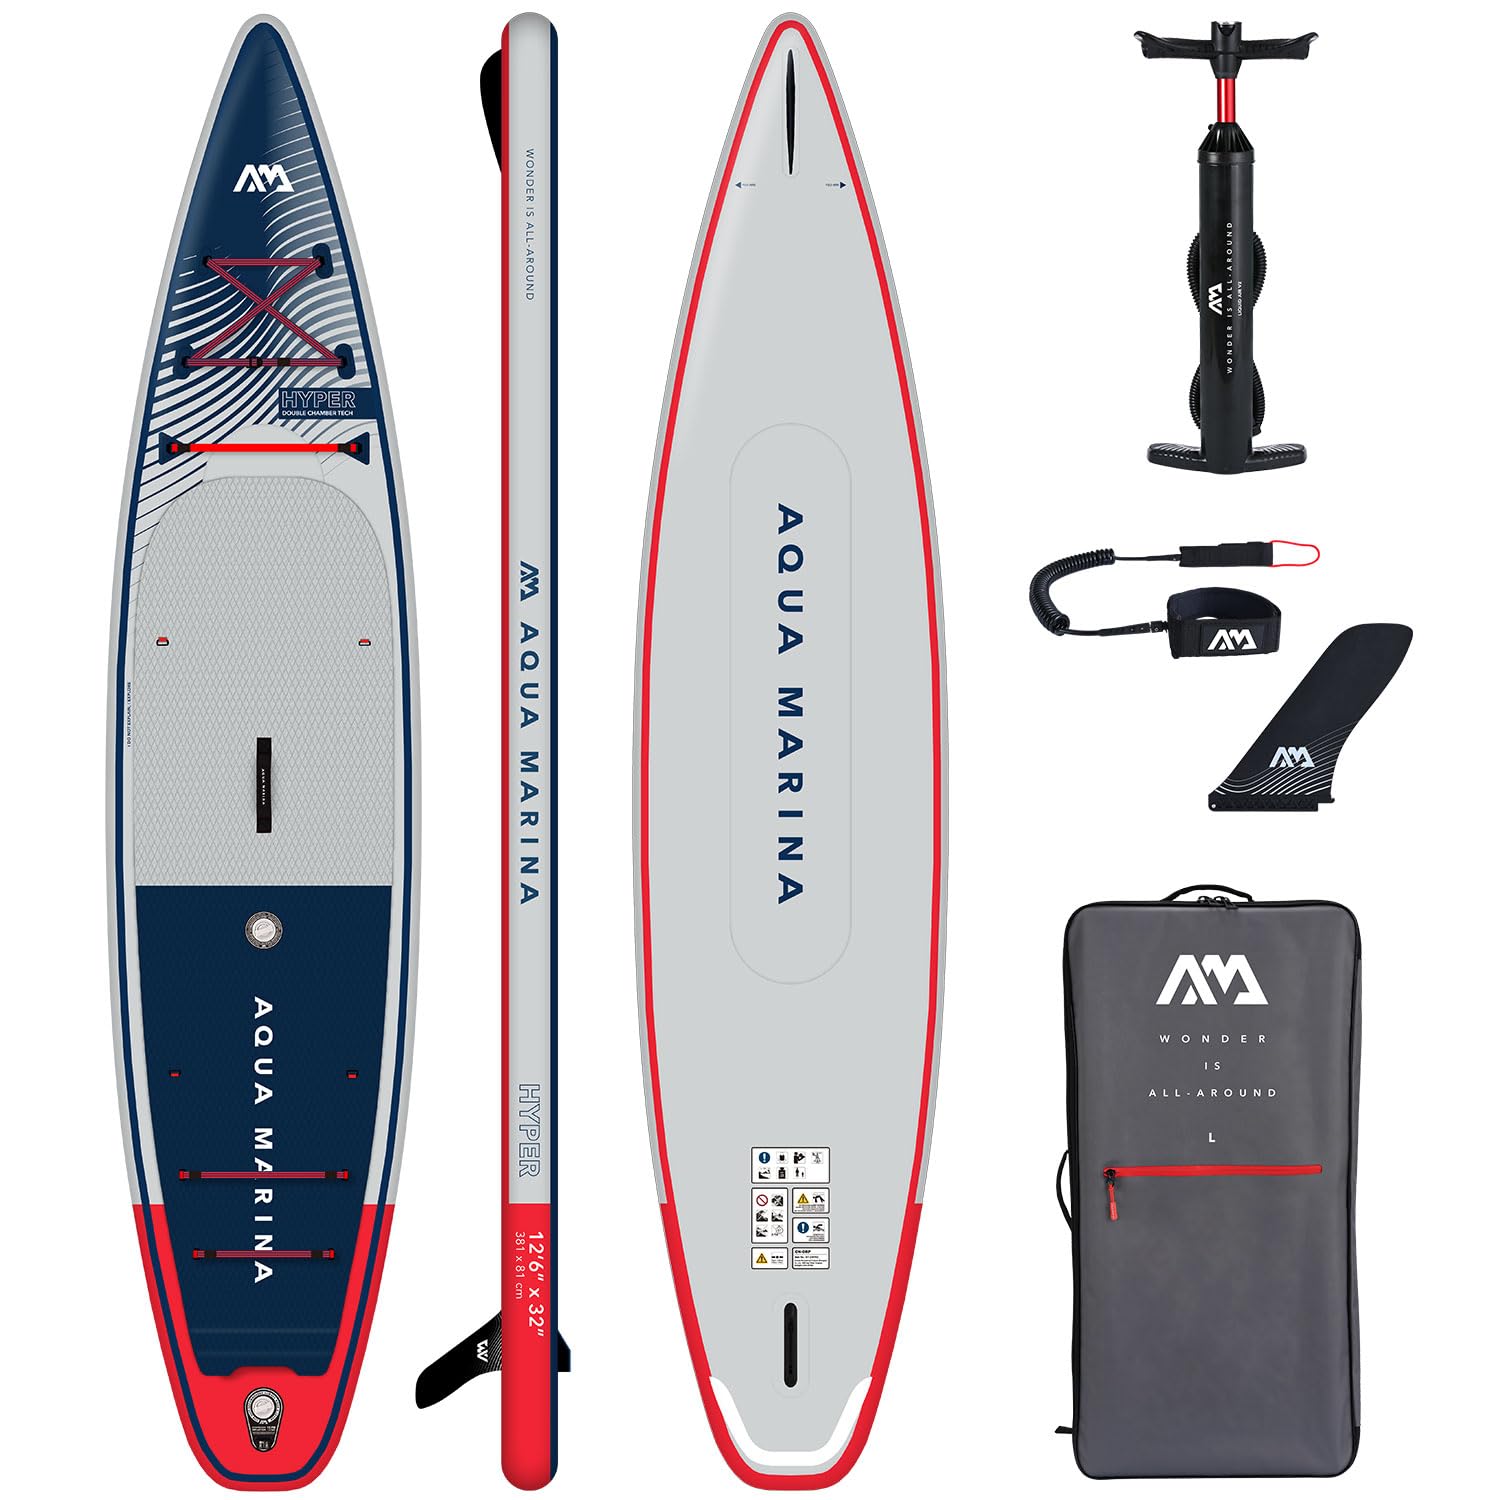 Campsup SUP Aqua Marina Hyper 12'6" Aufblasbares Stand Up Paddle Board | 381 x 81 x 15 cm | Surfboard für Einsteiger & Fortgeschrittene mit zubehör | Tragkraft bis 170 Kg